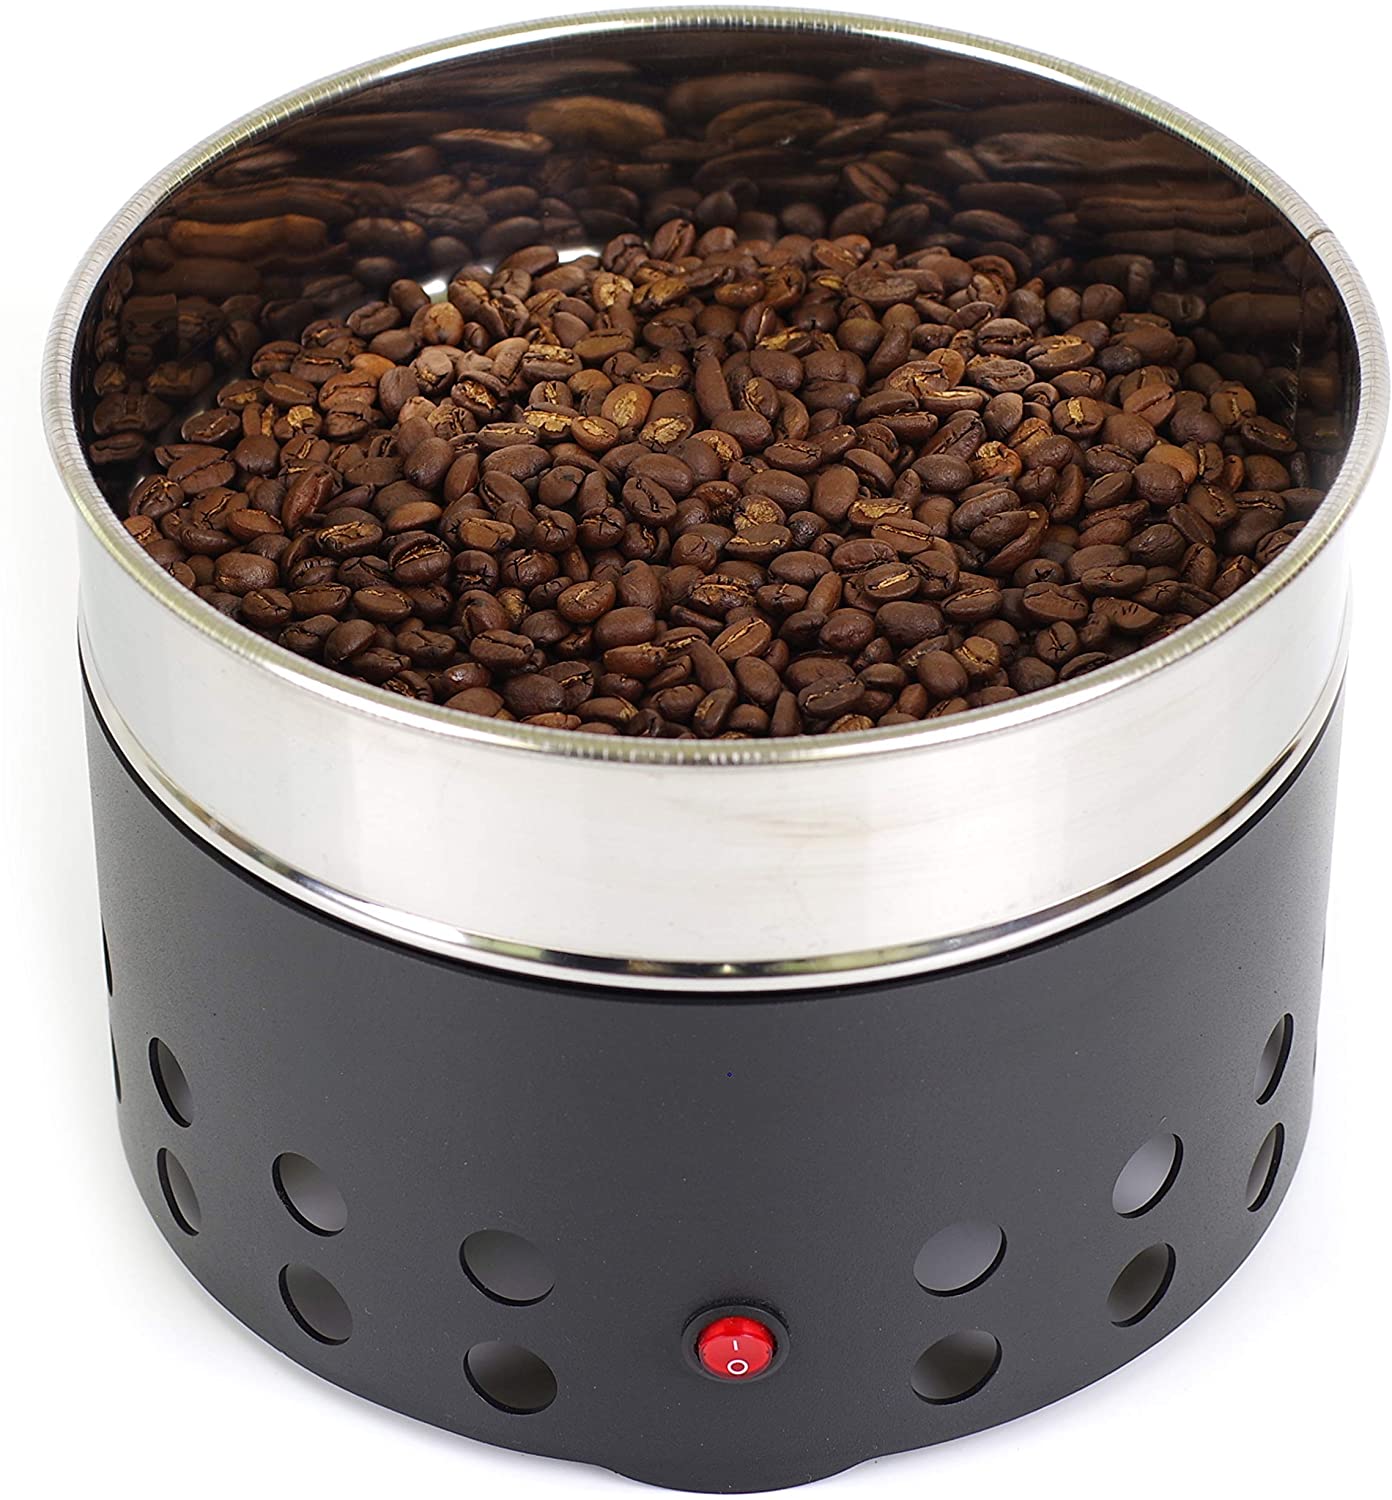 コーヒー豆冷却装置：1台 サイズ：20cmx11cm 電圧：110v 容量：350g コーヒークーラー：焙煎後の豆の熱を吸引し豆の温度を下げるコーヒー冷却器具です。上の皿に豆を入れると、下から冷やされる、という仕組み。 冷却用網付き：単層のコーヒークーラー。冷却用網は304ステンレス材質で作られており、直径が約20cmです。円形のデザインは収納に場所を取りませんので自家焙煎をする方にはお勧めの一品です。 おしゃれな設計：金属塗装のため、機体の表面がより滑らかです。上の皿部分は、耐久性に優れている304ステンレス質を採用し、安全安心使用させることができますよ。また、ボタンがたった一つで使いやすく。ボタンを押すと冷却作業が始まります。ボタンを押すと冷却作業が終わります。 ハイパワー：想像以上のパワー。ファンのパワーが強く回転のスピードが3100r/minで短時間焙煎豆の冷却を実現します。珈琲豆冷却器の可容量は350gとなり、別売りのヘラかなんかでかき混ぜると、あっという間に手で触っても熱くないくらいまで冷却完了で焙煎の作業効率大幅アップします。